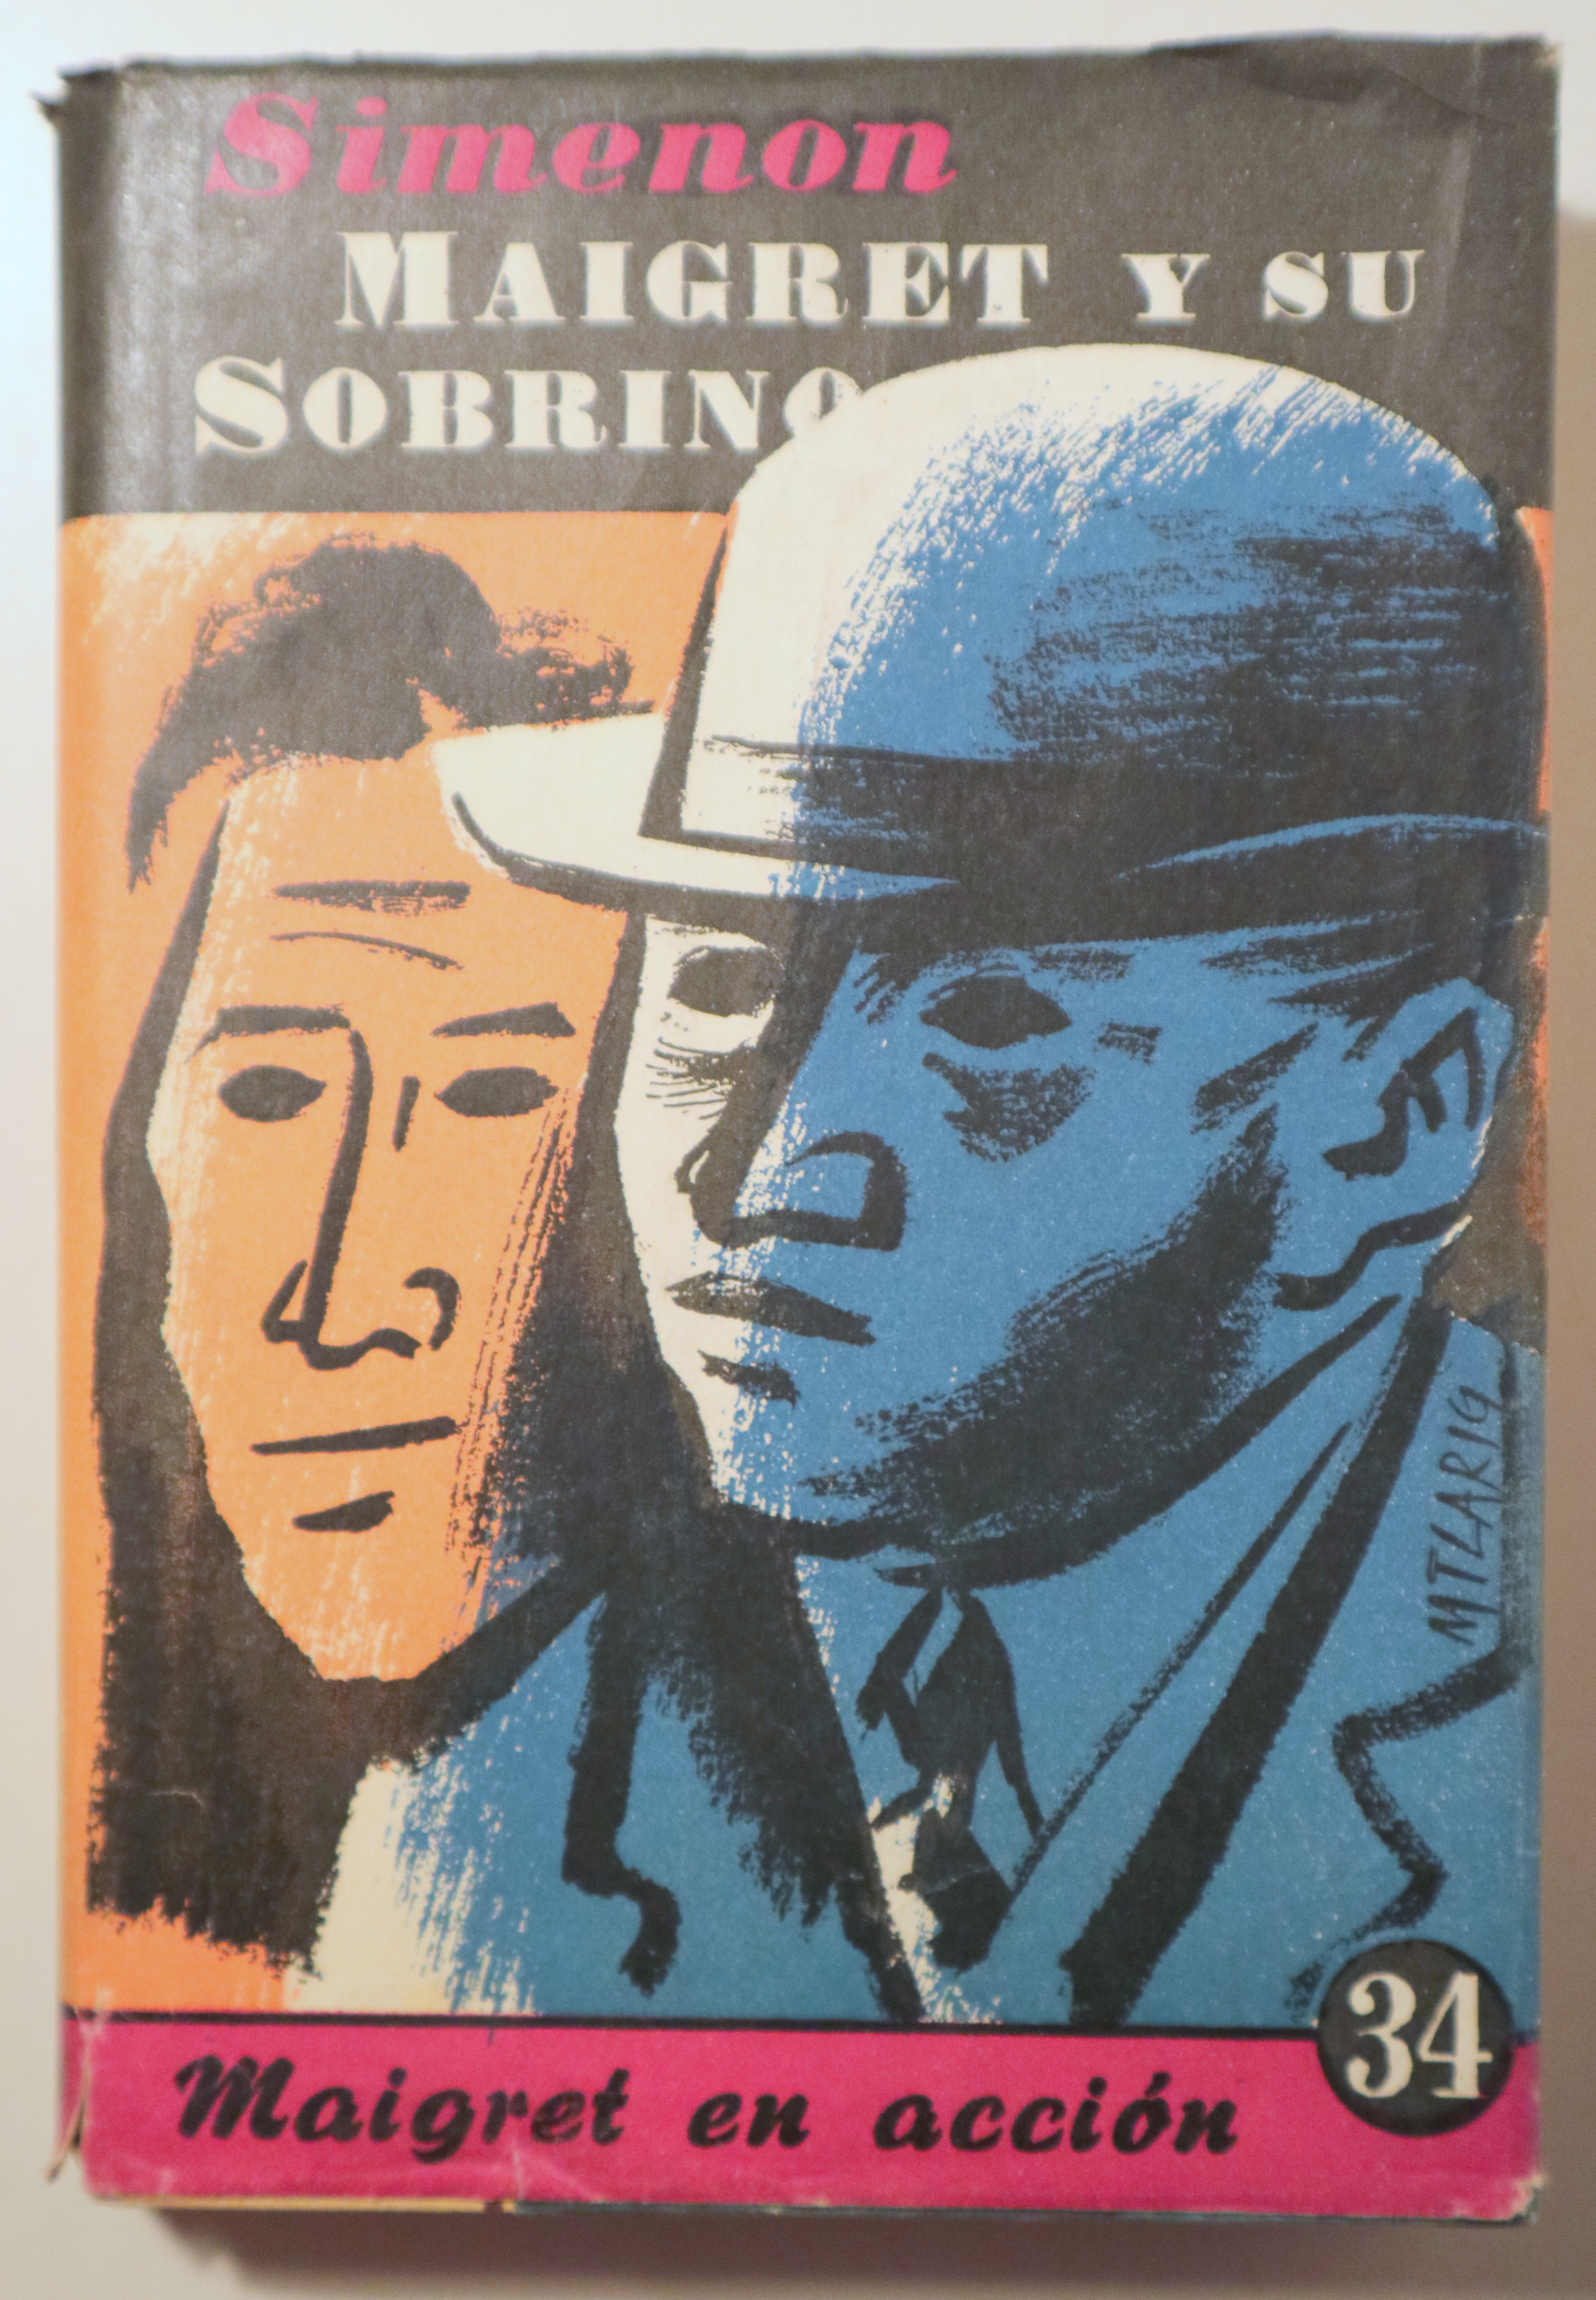 MAIGRET Y SU SOBRINO - Barcelona 1953 - 1º edición en español